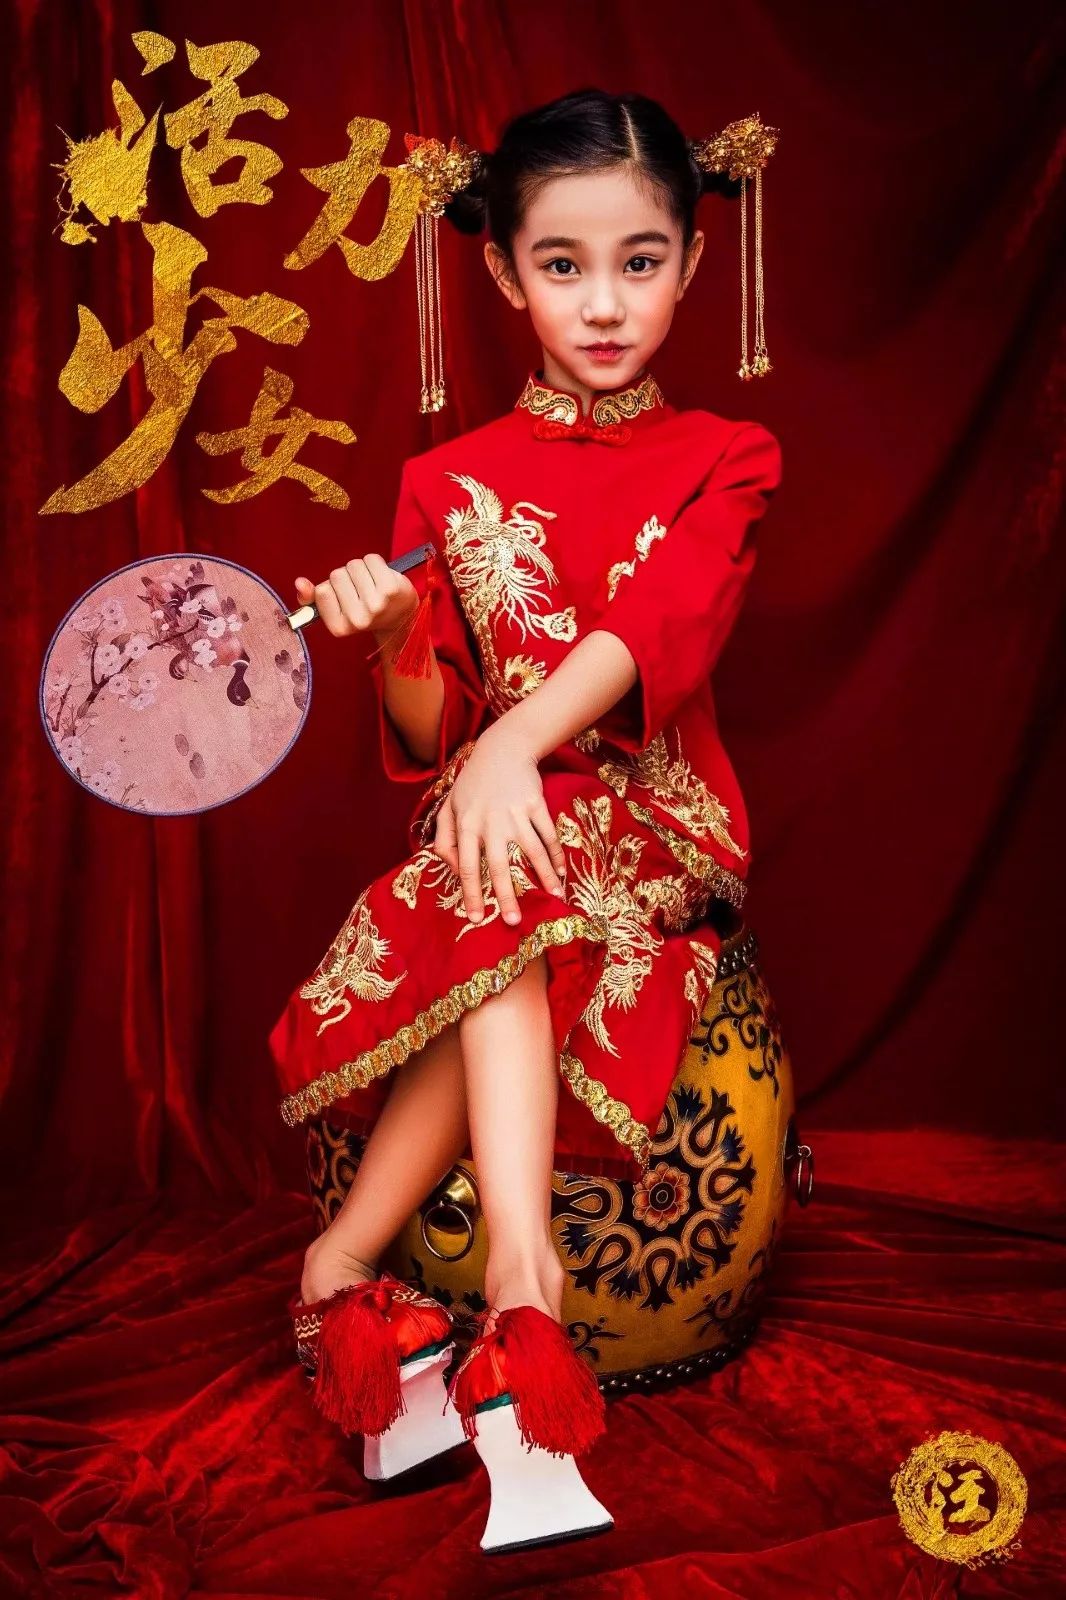 上海儿童摄影工作室_上海萌摄影创意儿童写真_上海儿童古装摄影